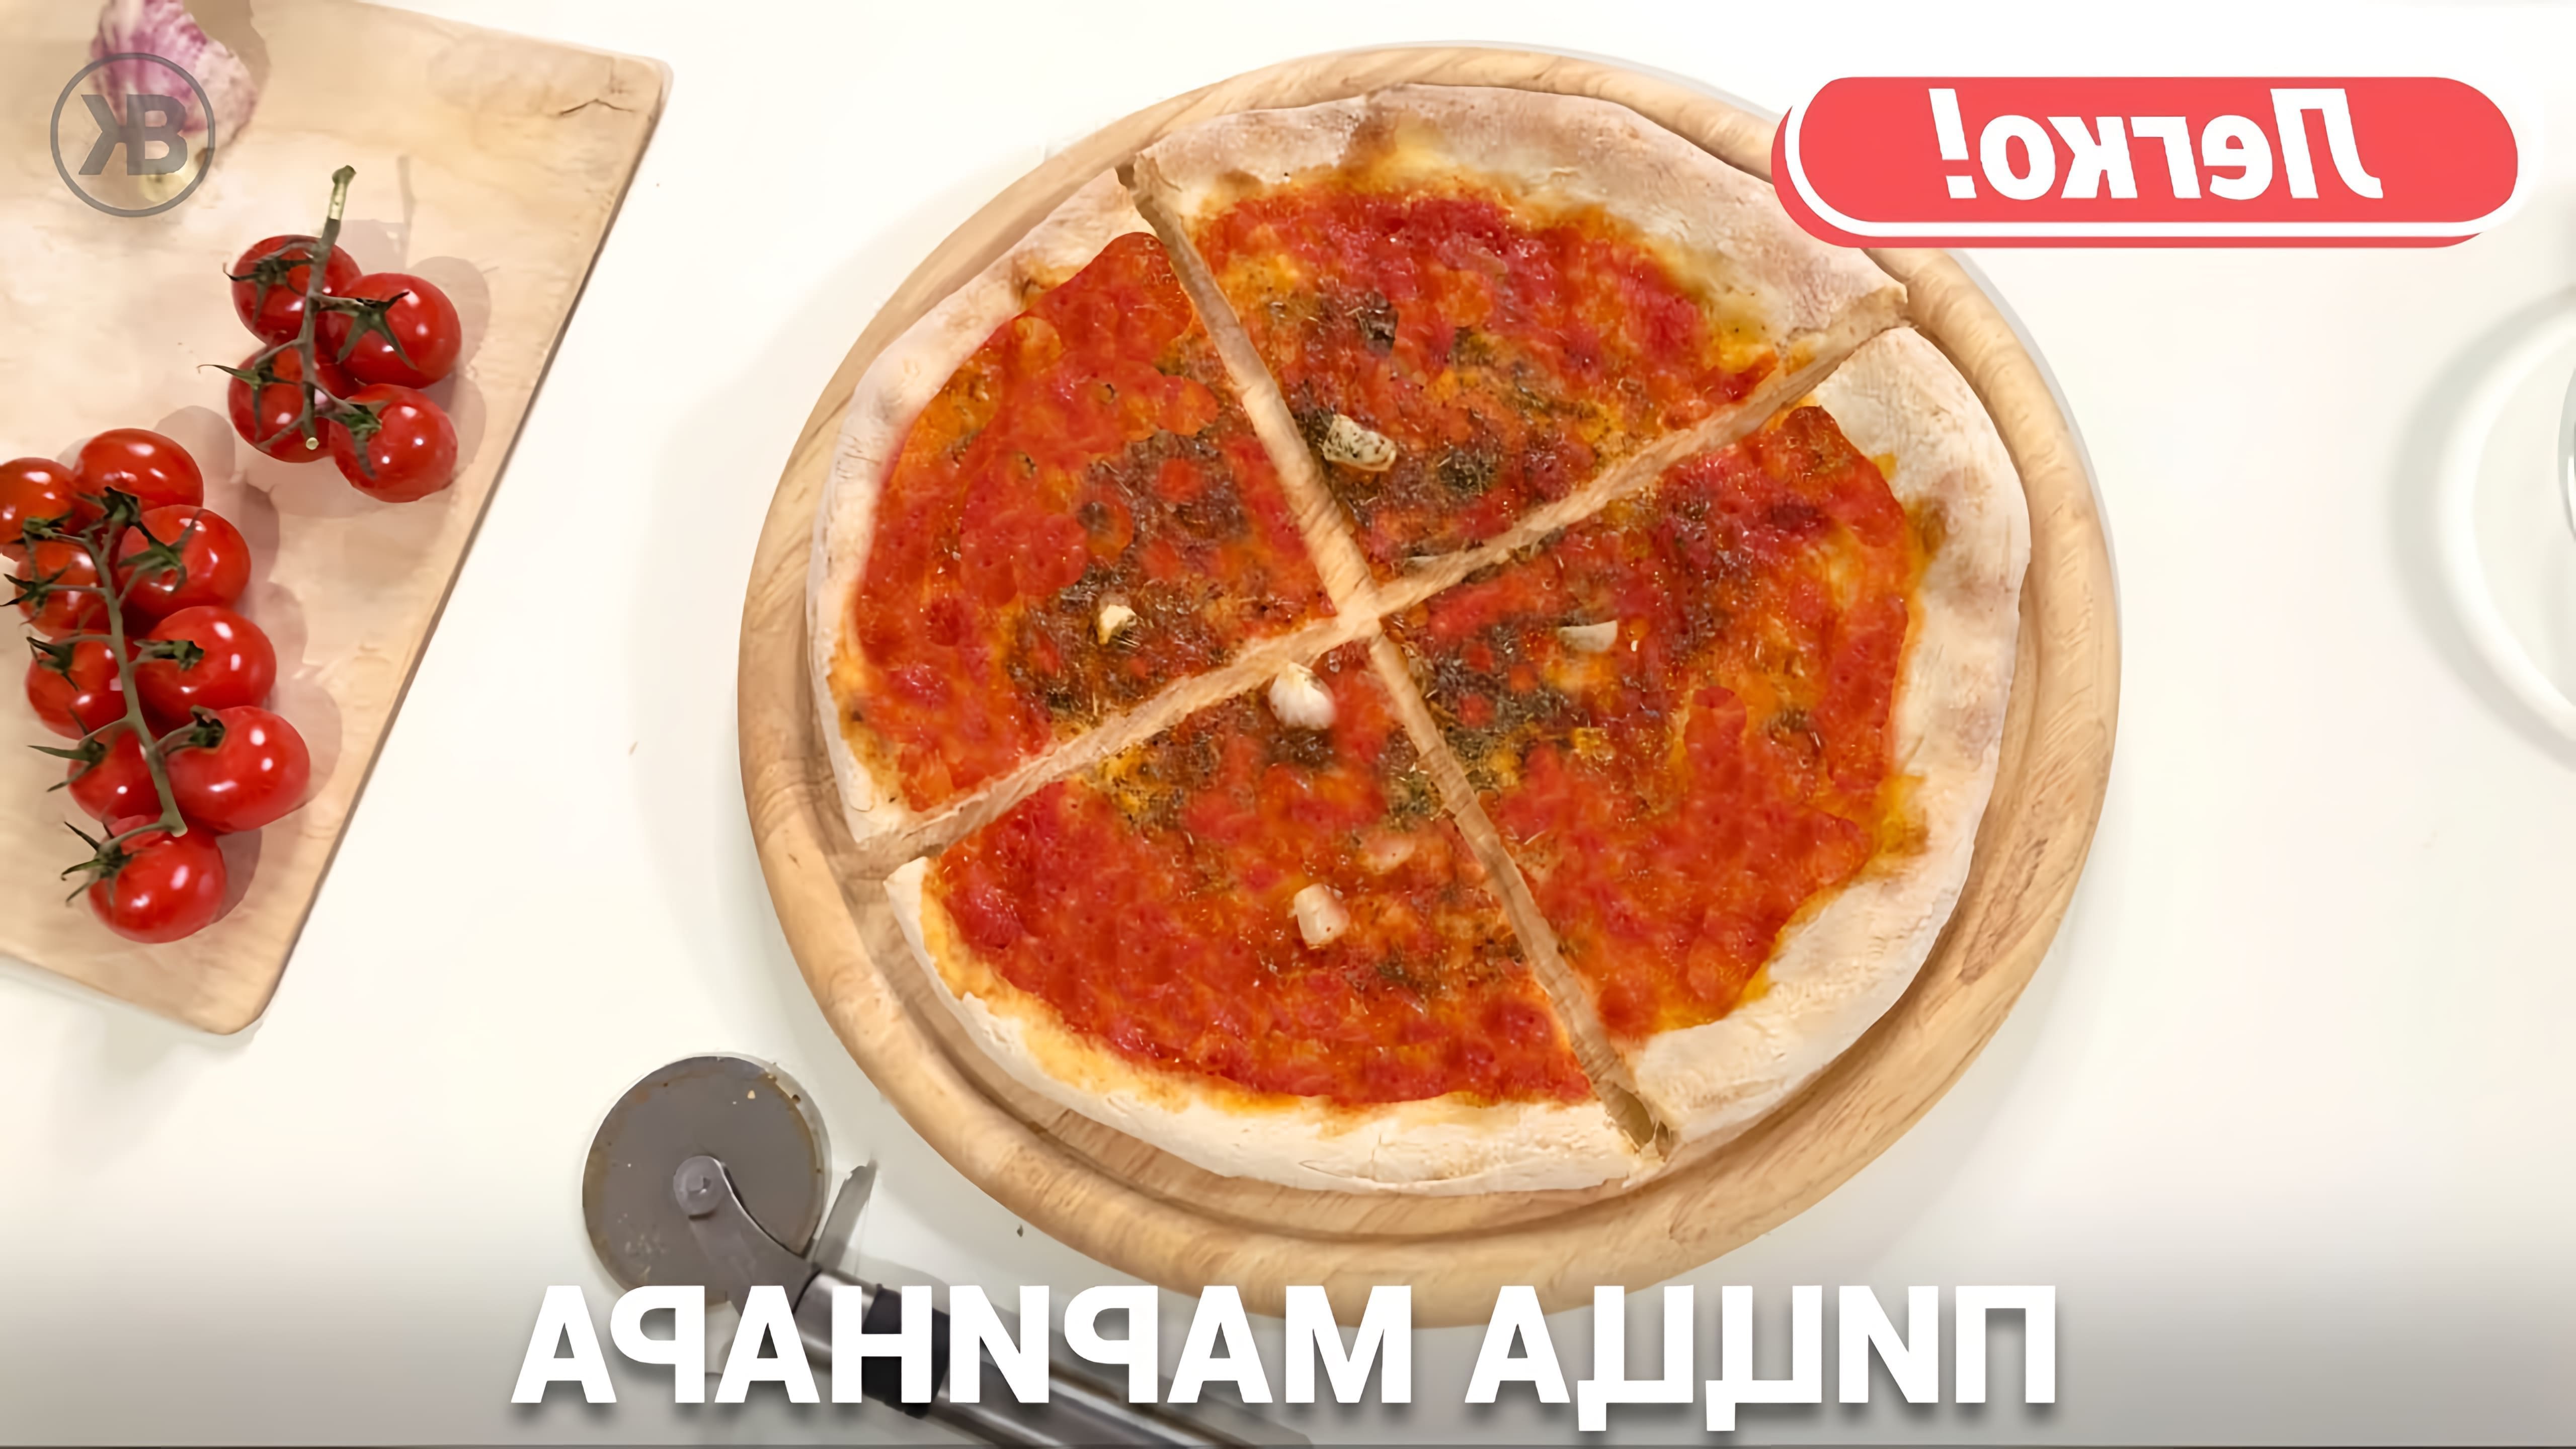 В этом видео демонстрируется процесс приготовления итальянской пиццы "Маринара" с морепродуктами